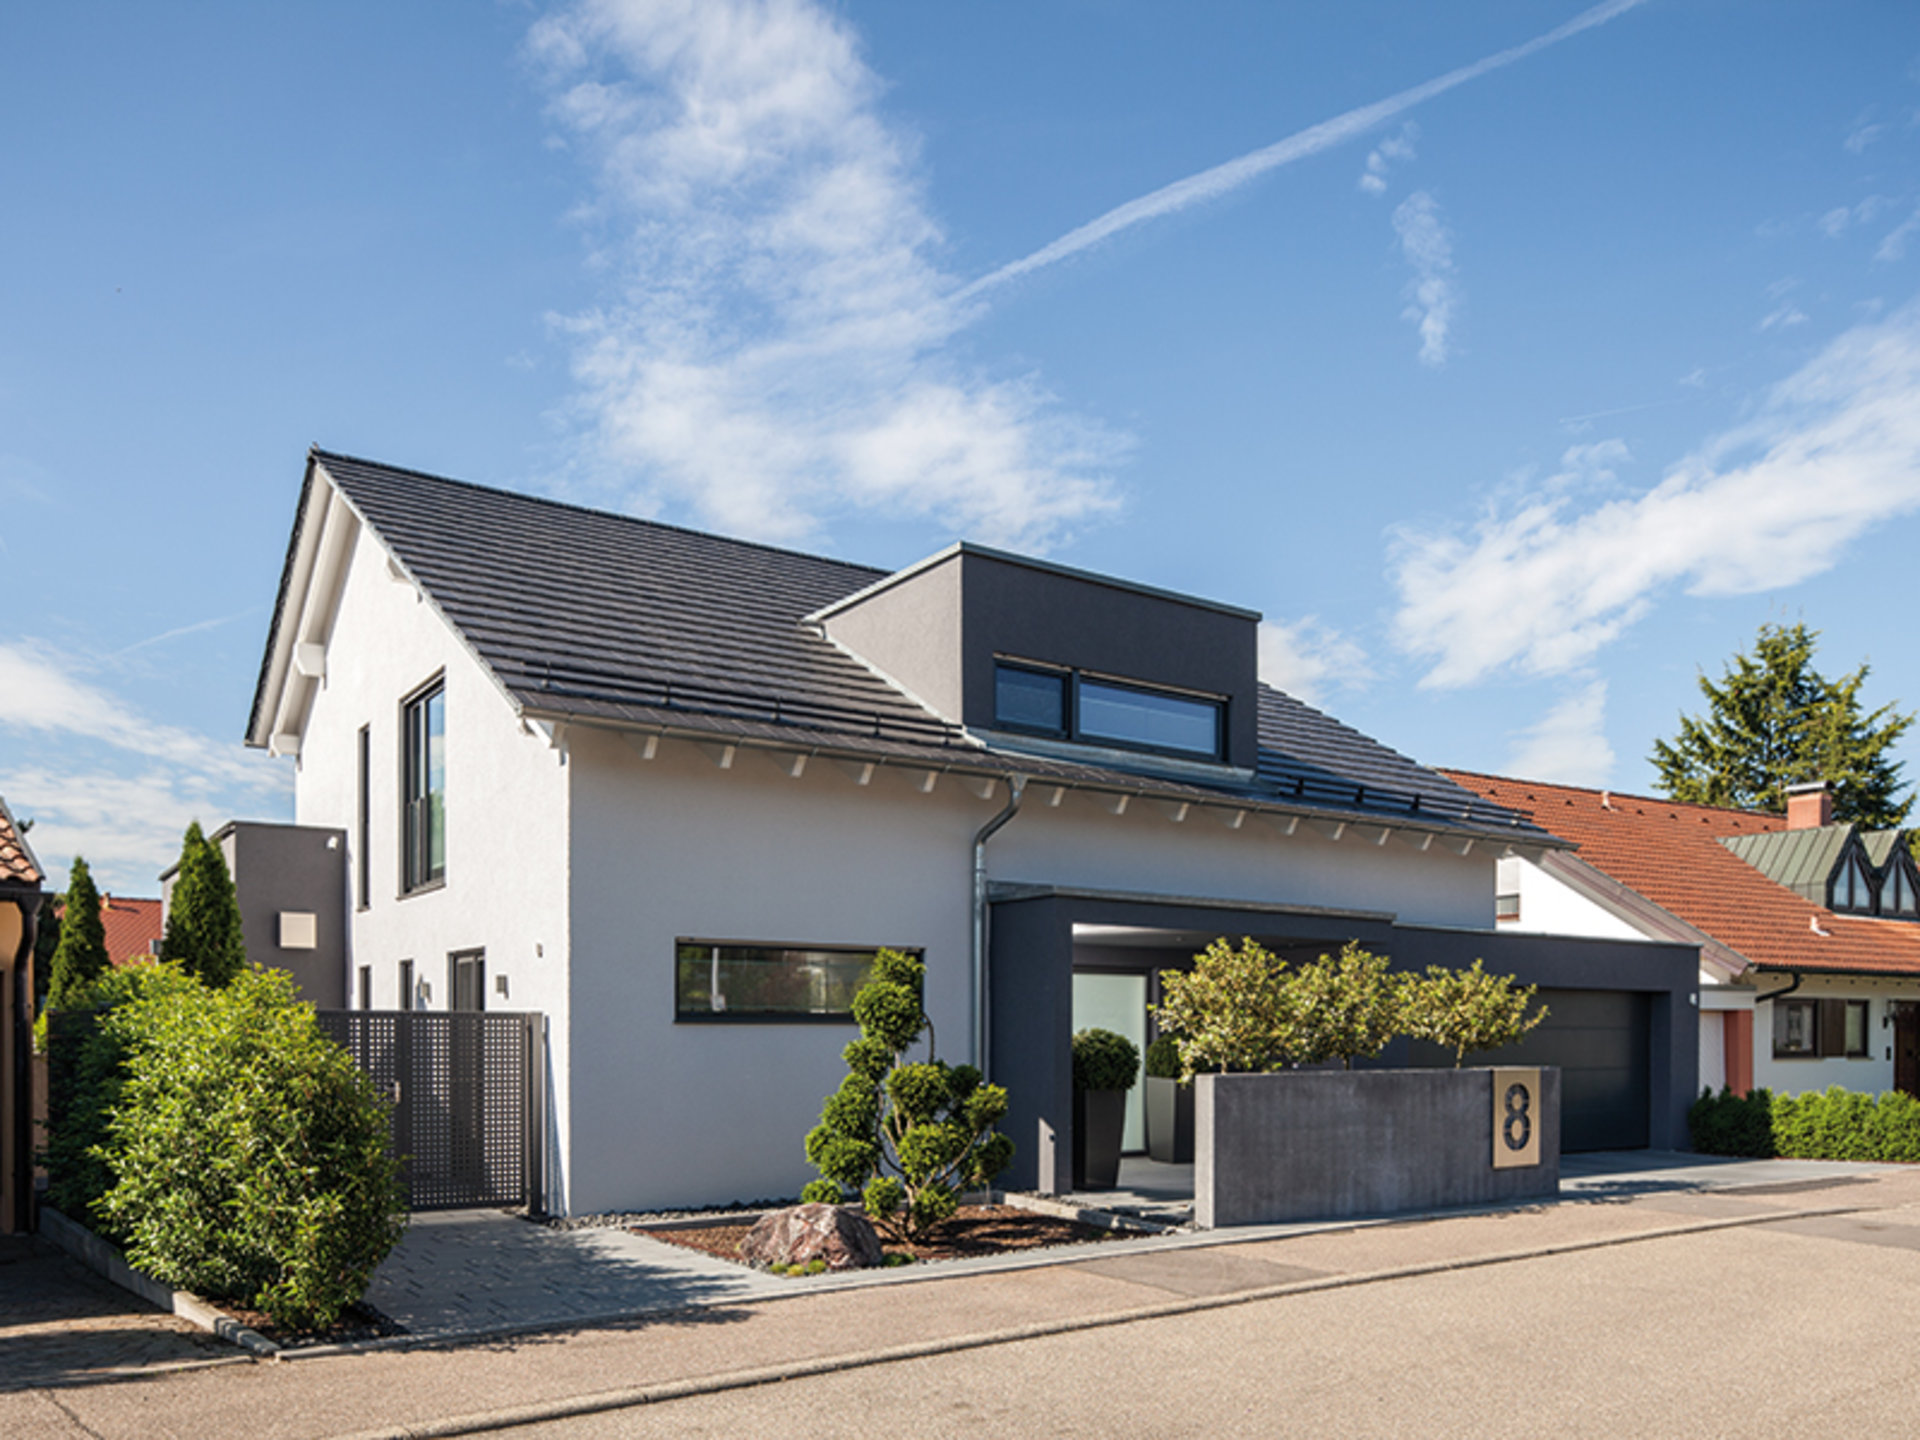 BAUMEISTER-HAUS Uthoff verbindet ein klassisches Satteldach mit topmodernen Gestaltungselementen